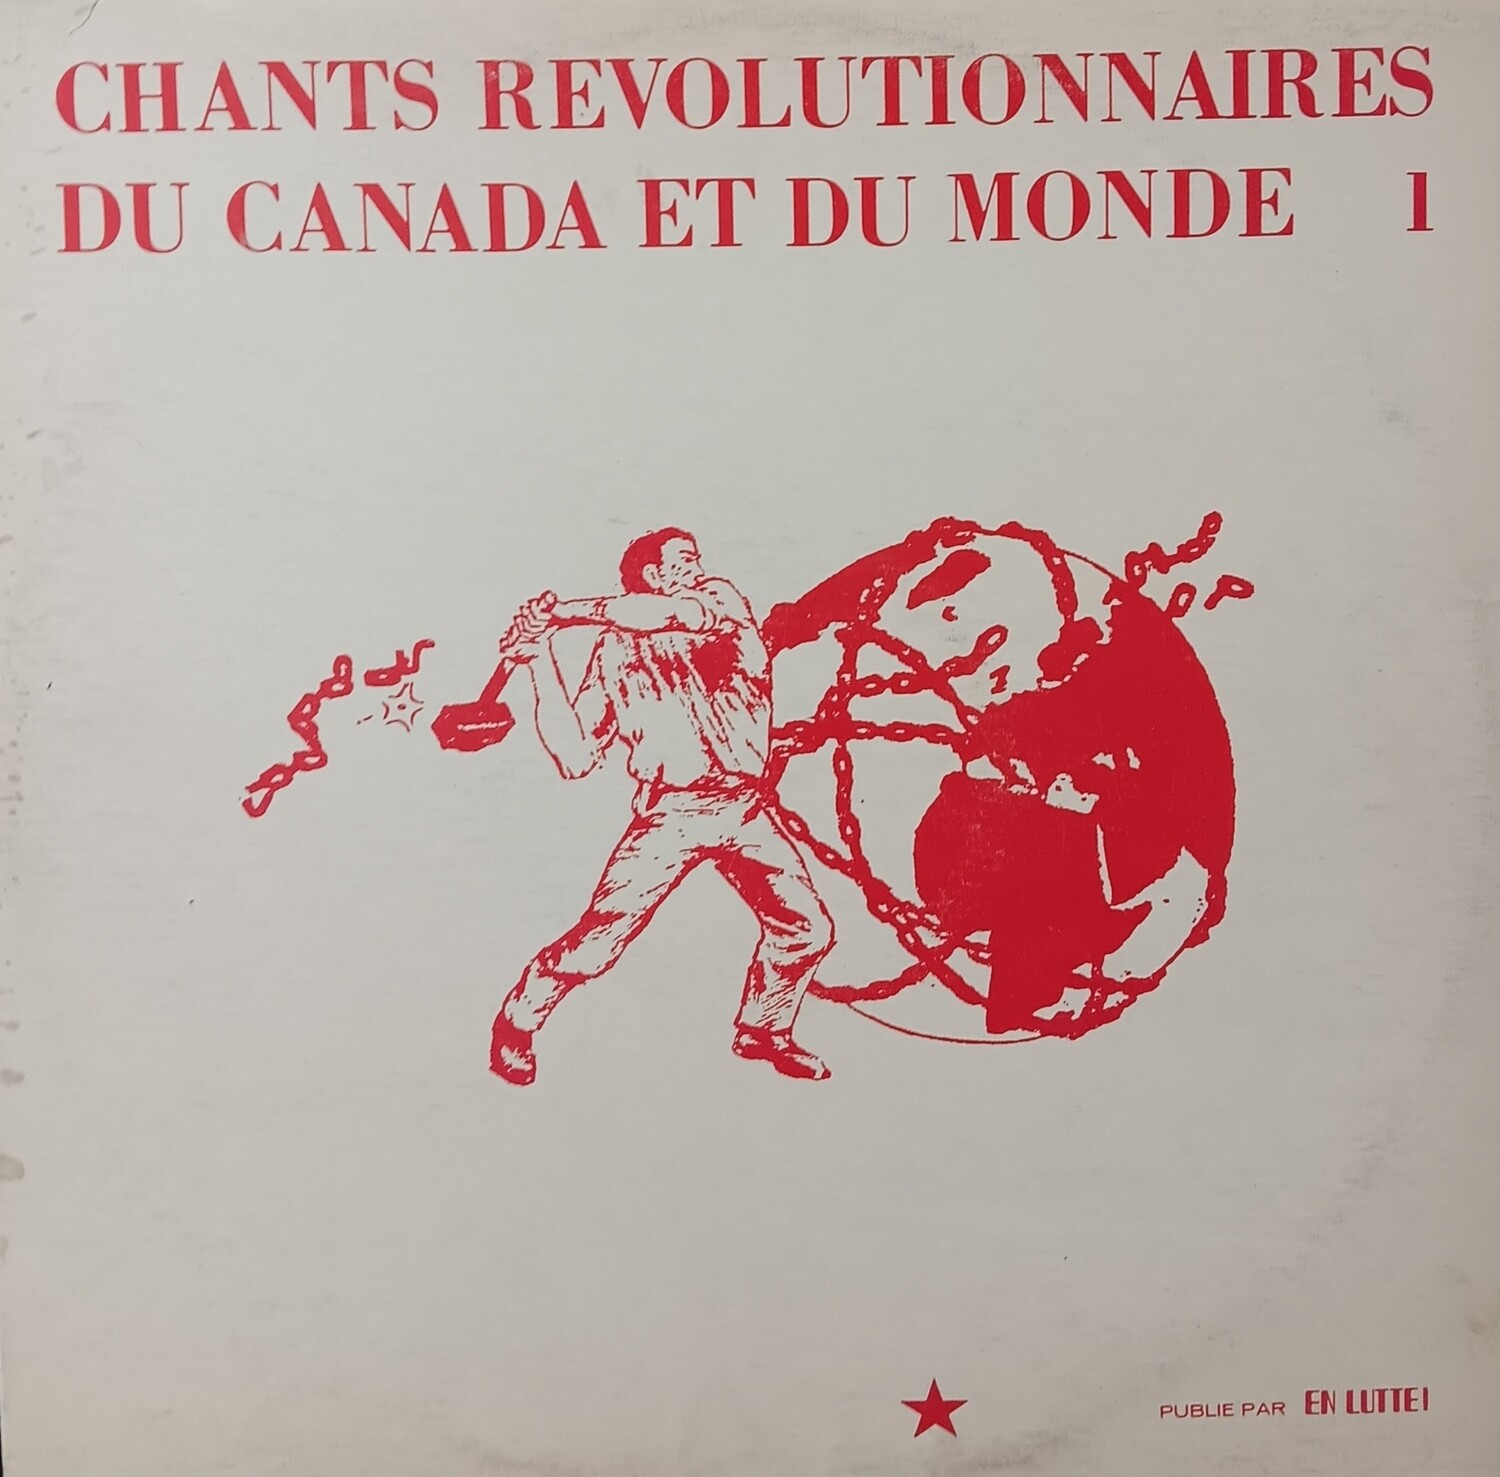 VARIOUS - Chants révolutionnaires du Canada et du monde